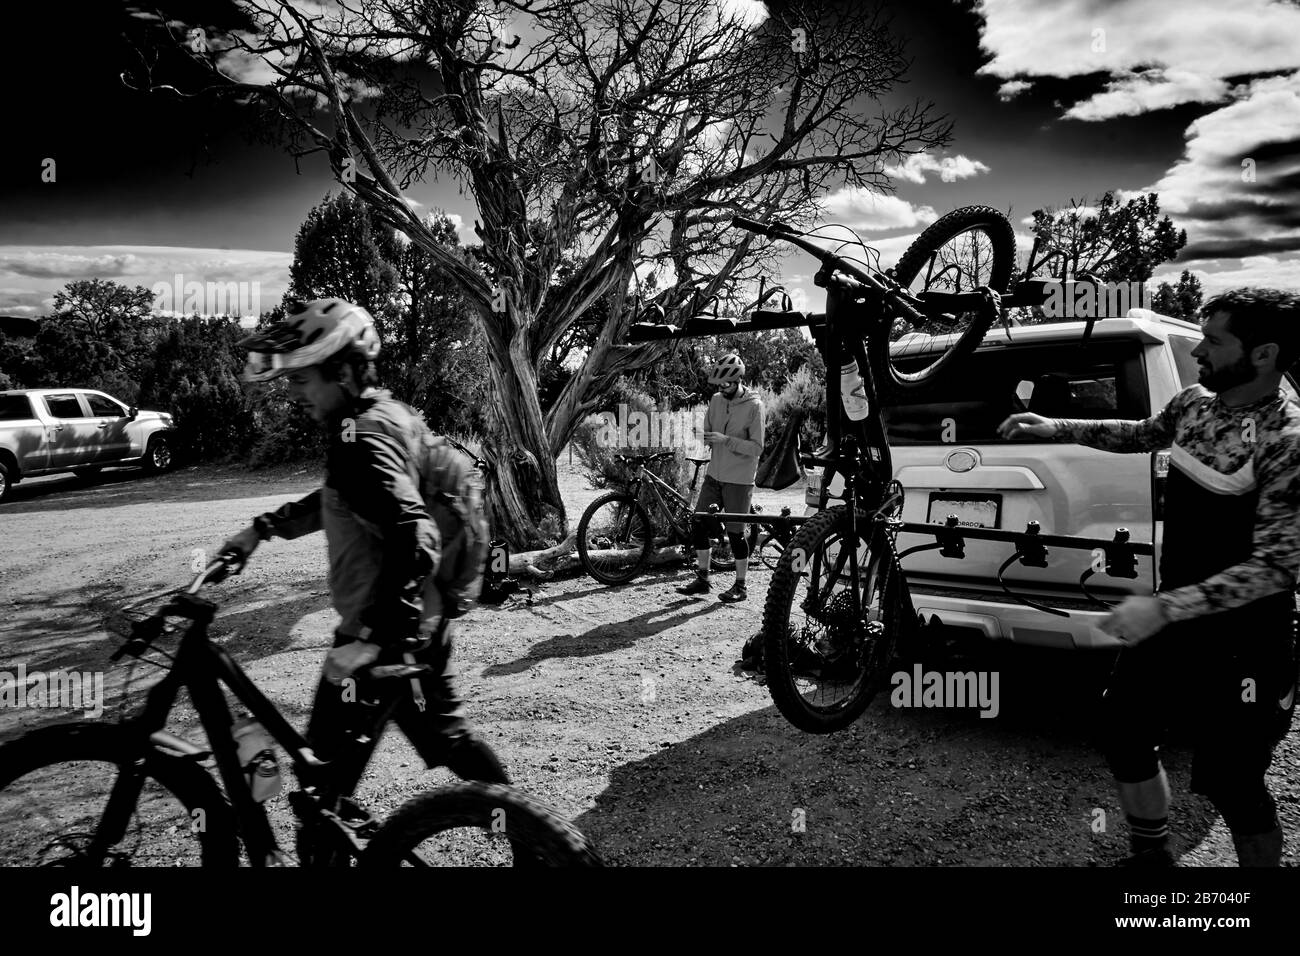 Les motards se préparent à monter à Grand Junction, Colorado. Banque D'Images